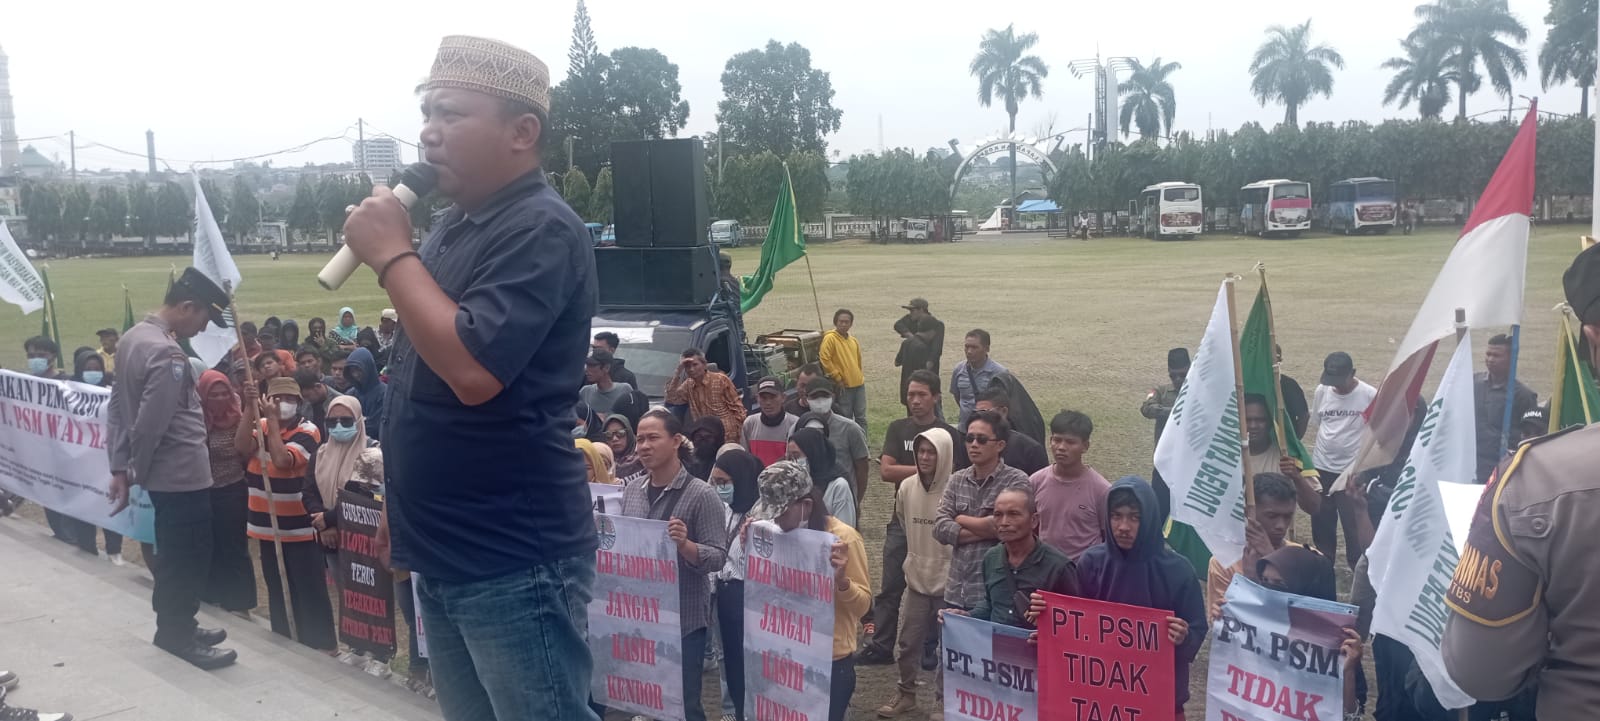 Puluhan Massa Gelar Aksi di Depan Kantor DPRD Lampung, Dukung Penutupan PT PSM Way Kanan 